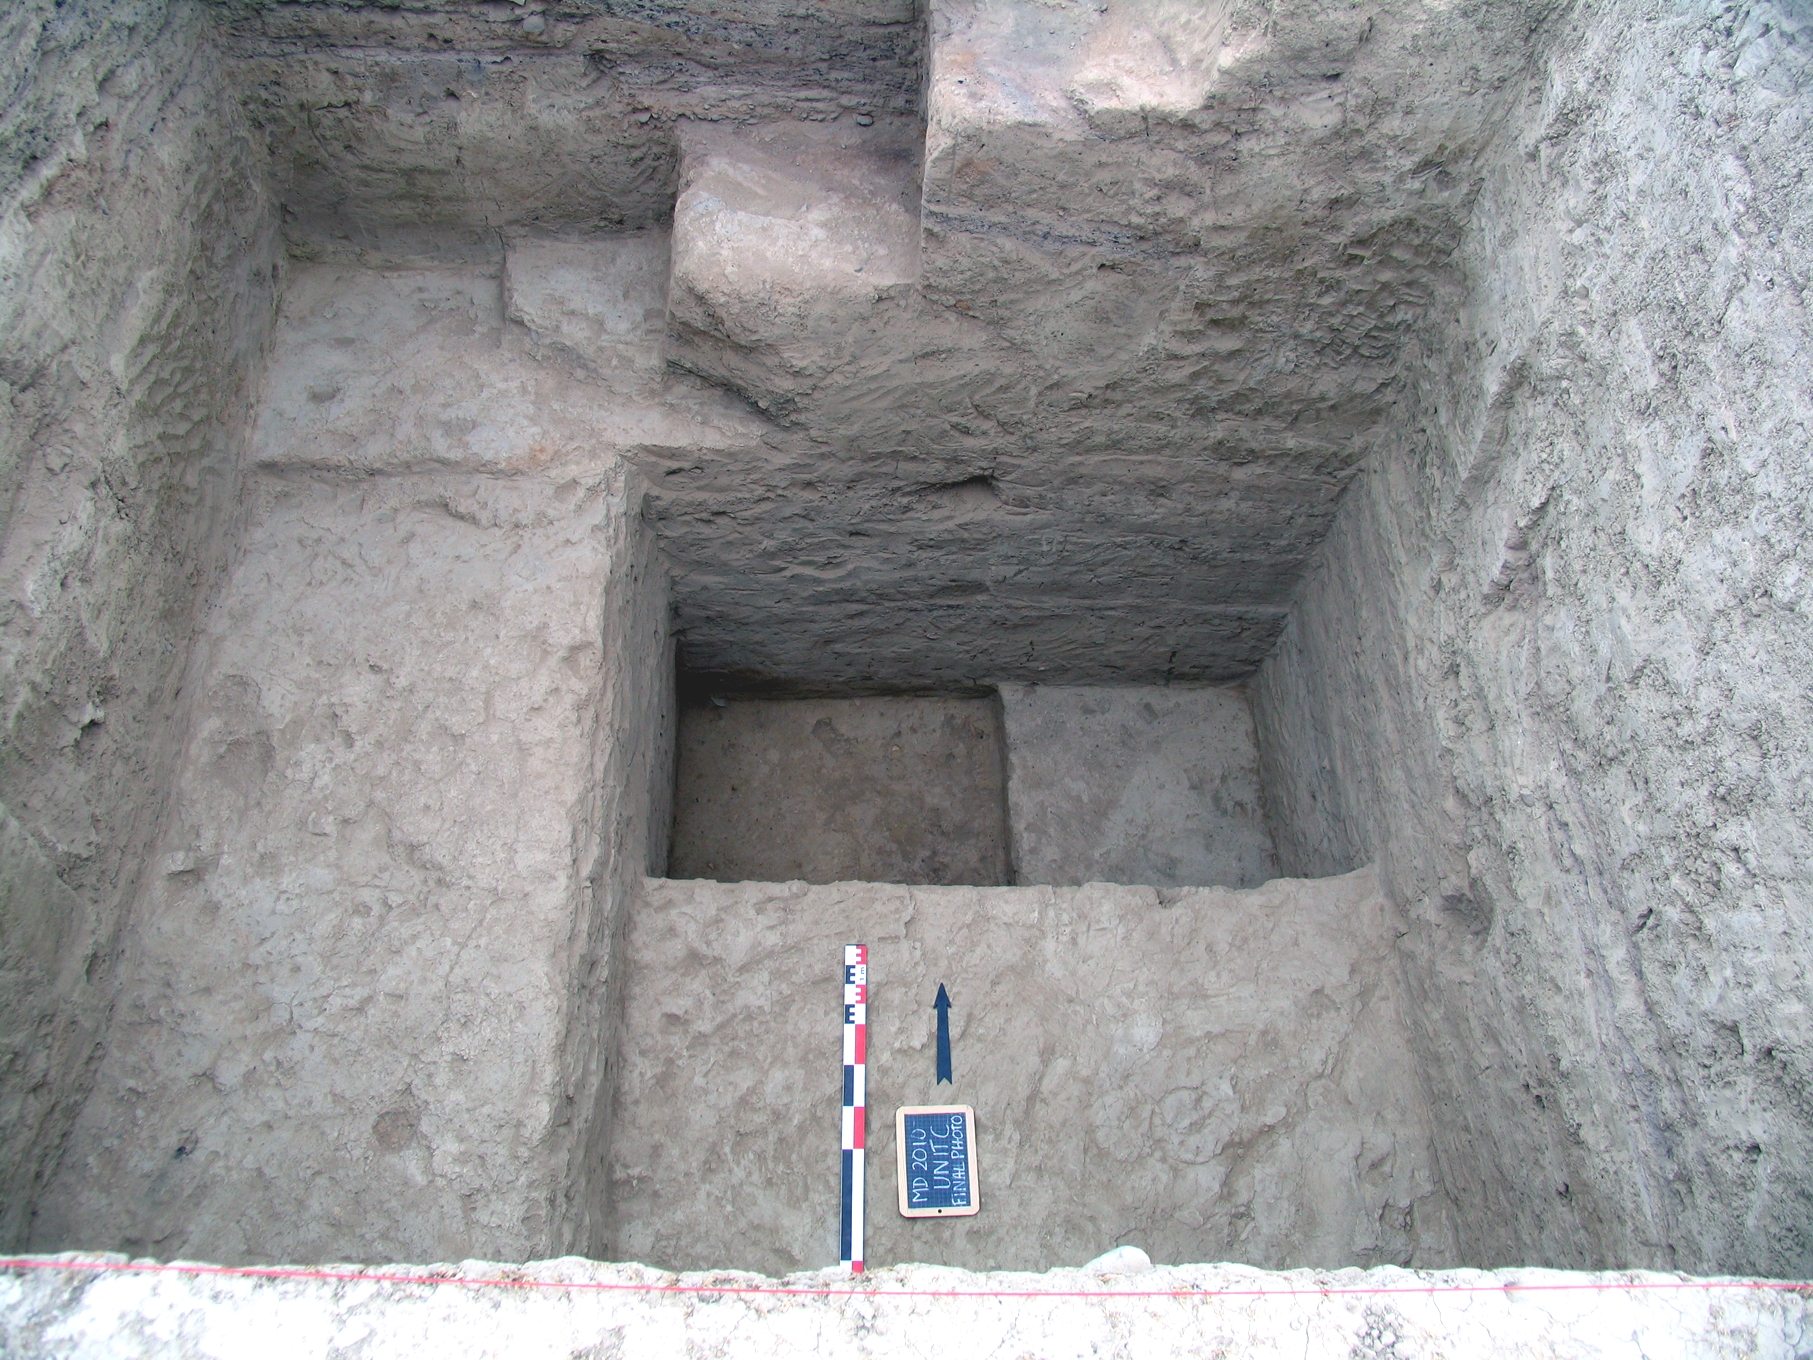 Tiefschnitt in Unit C am Ende der Grabungskampagne 2010. Die Sondage ließ sowohl Äneolithische als auch Neolithische Siedlungshorizonte erkennen. Letztere bestanden vorwiegend aus ephemeren Begehungsflächen.